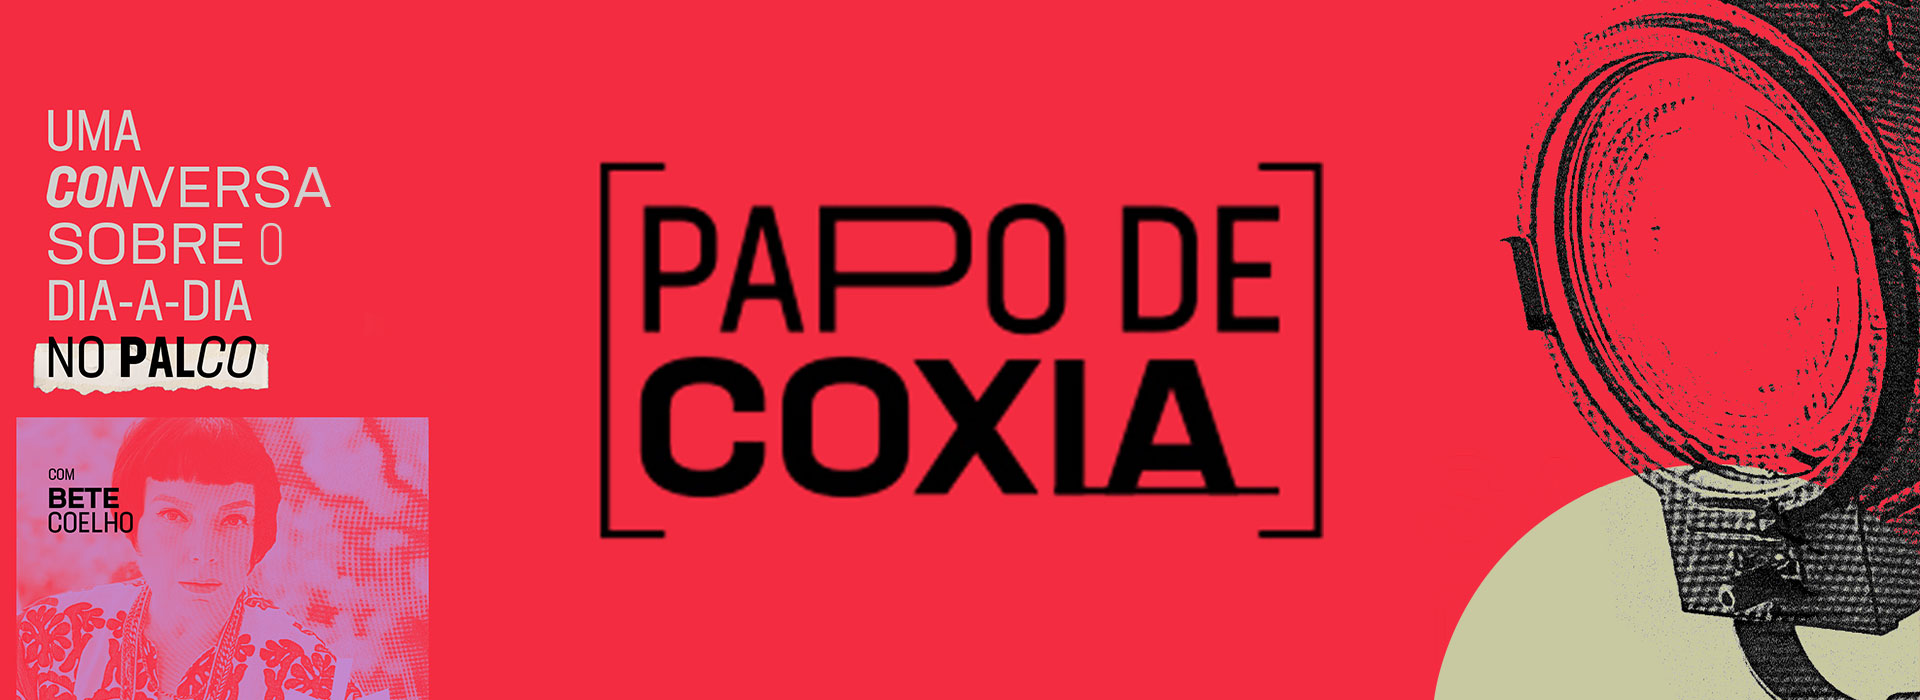 Papo de Coxia